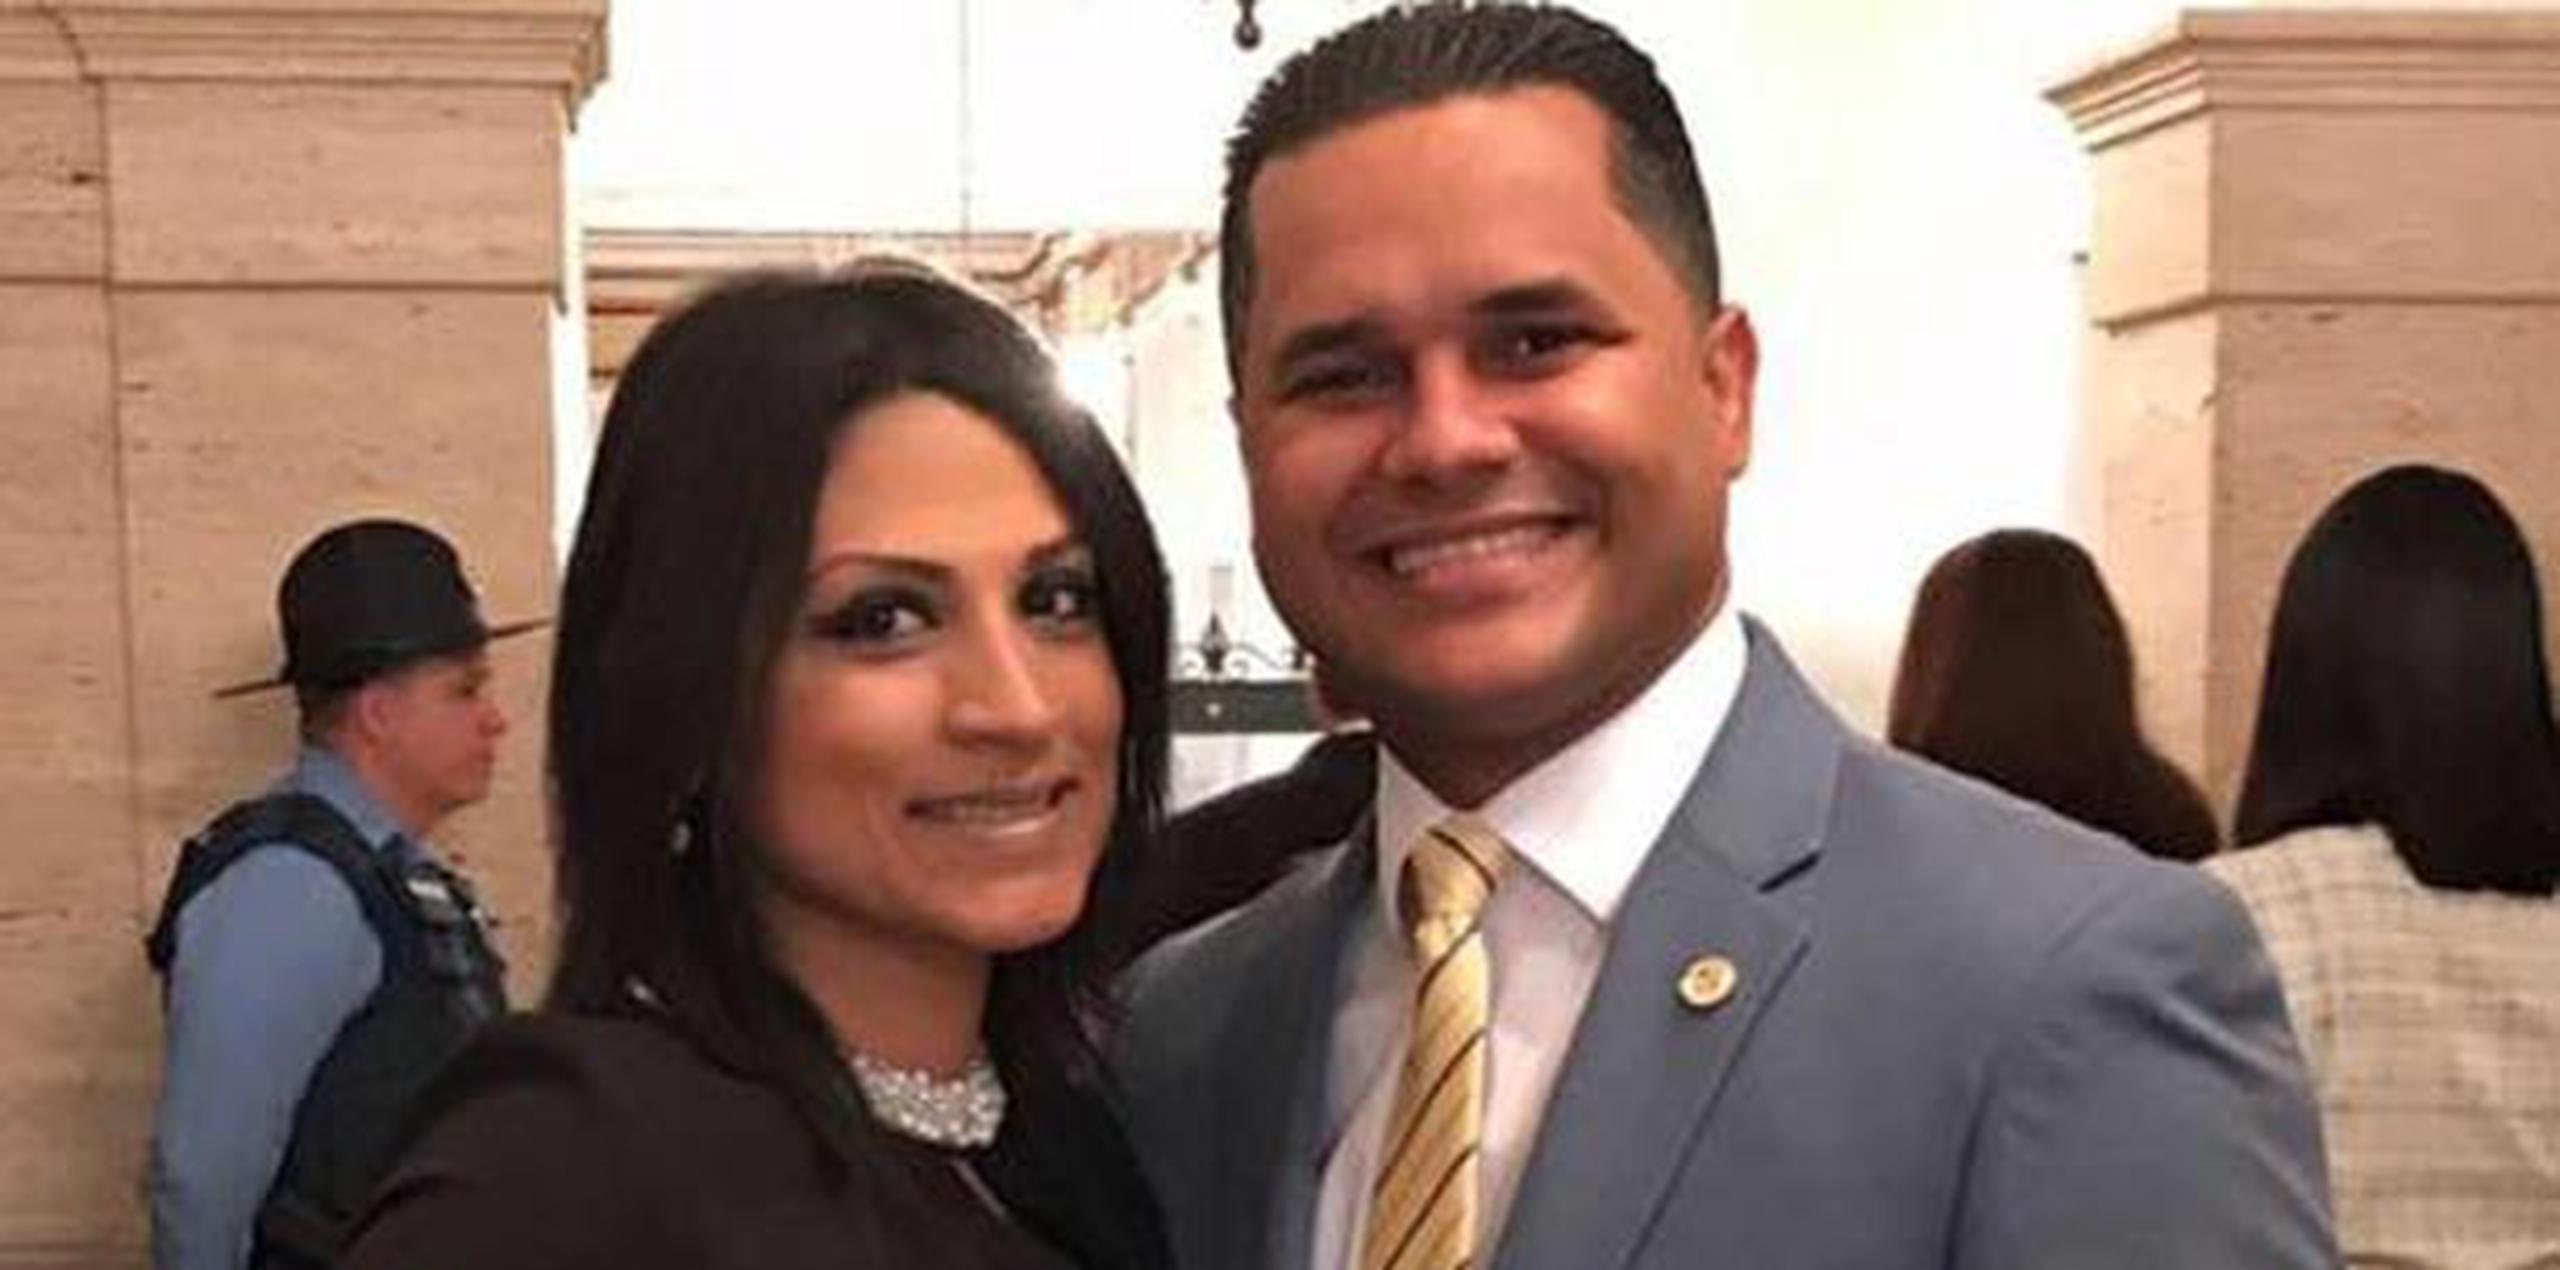 Ante los nuevos señalamientos, Justicia pudiera evaluar si Soniel Torres Suárez participó en un posible esquema de malversación de fondos en la oficina del legislador. (Captura Facebook)